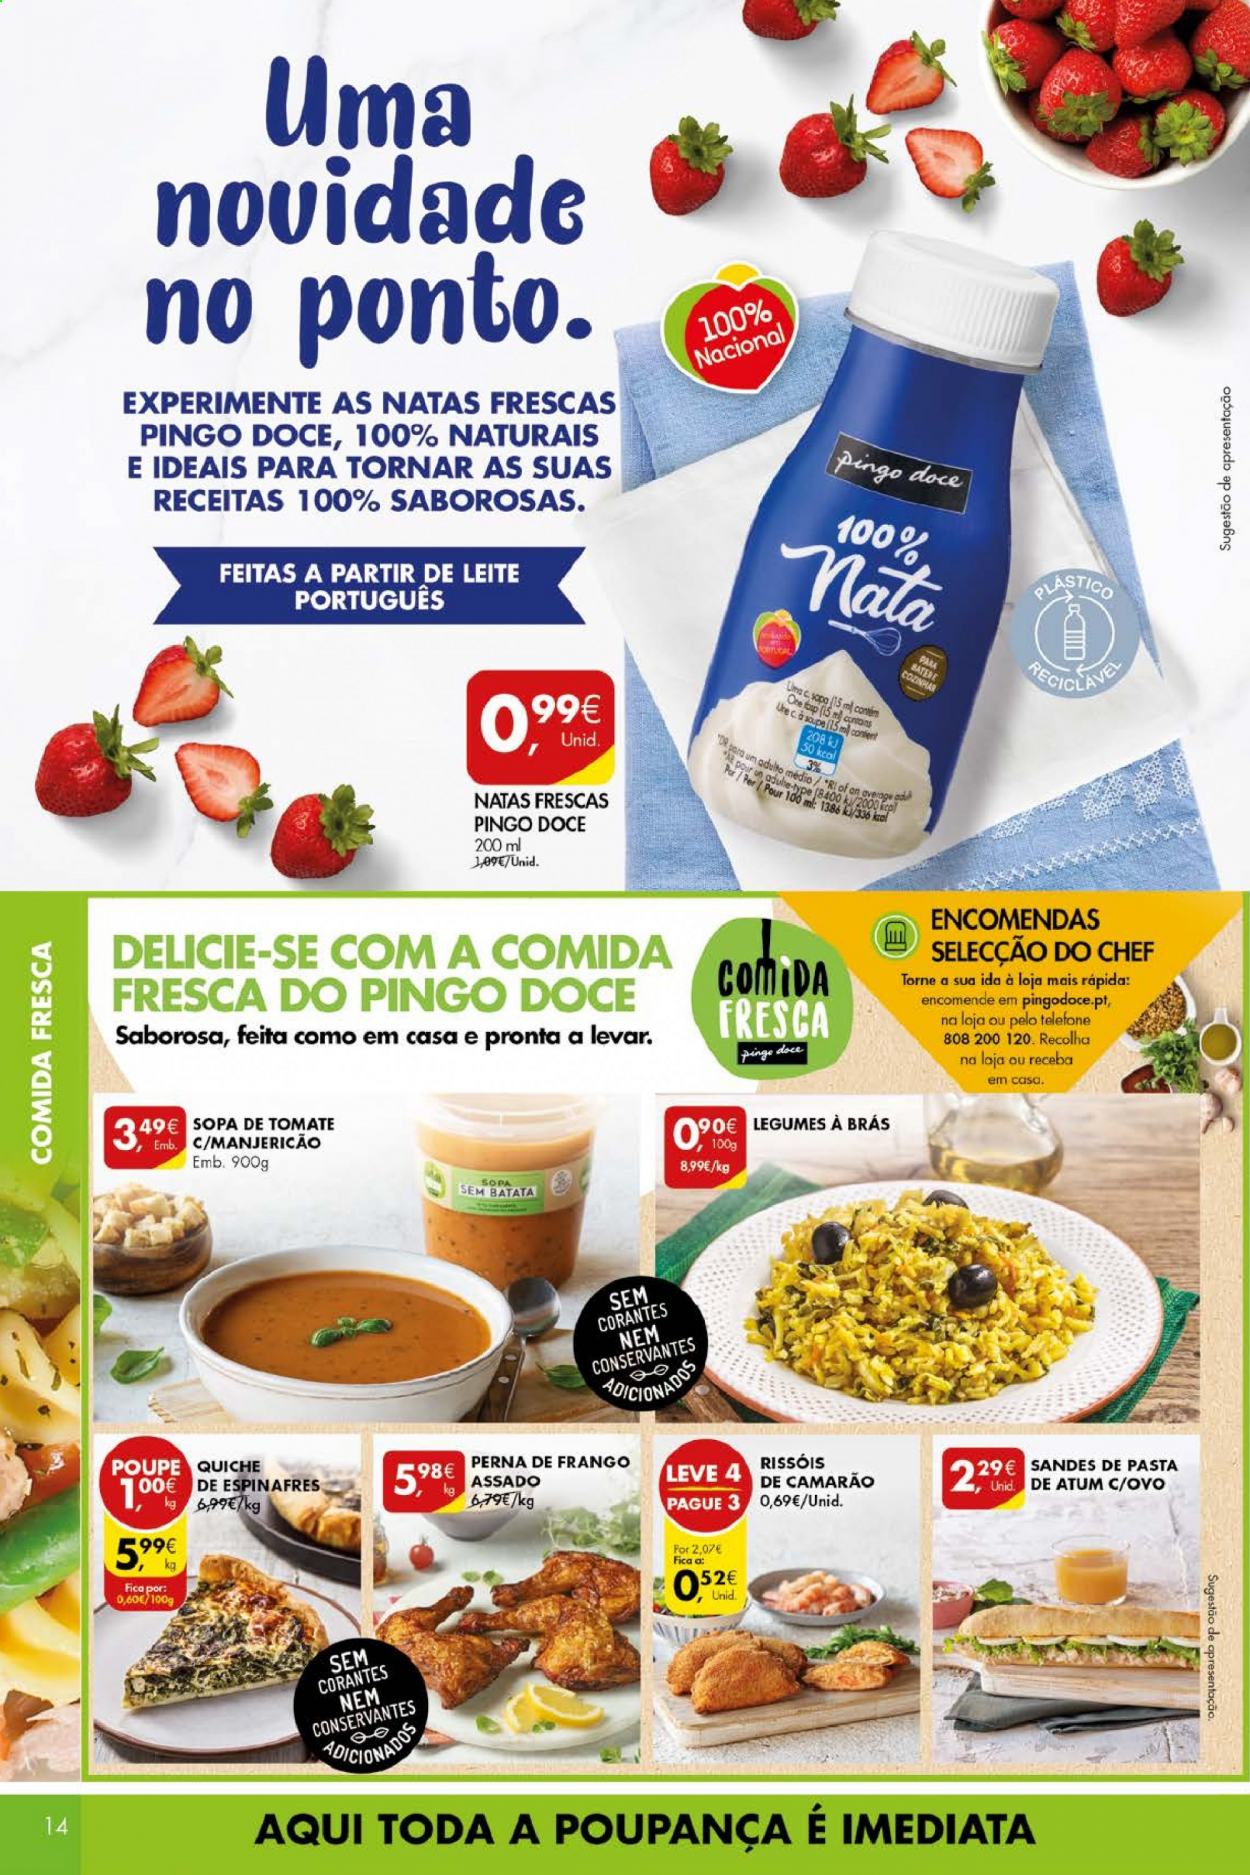 thumbnail - Folheto Pingo Doce - 13.4.2021 - 19.4.2021 - Produtos em promoção - quiche, perna de frango, sopa, rissois, ovos, nata, creme de leite. Página 14.